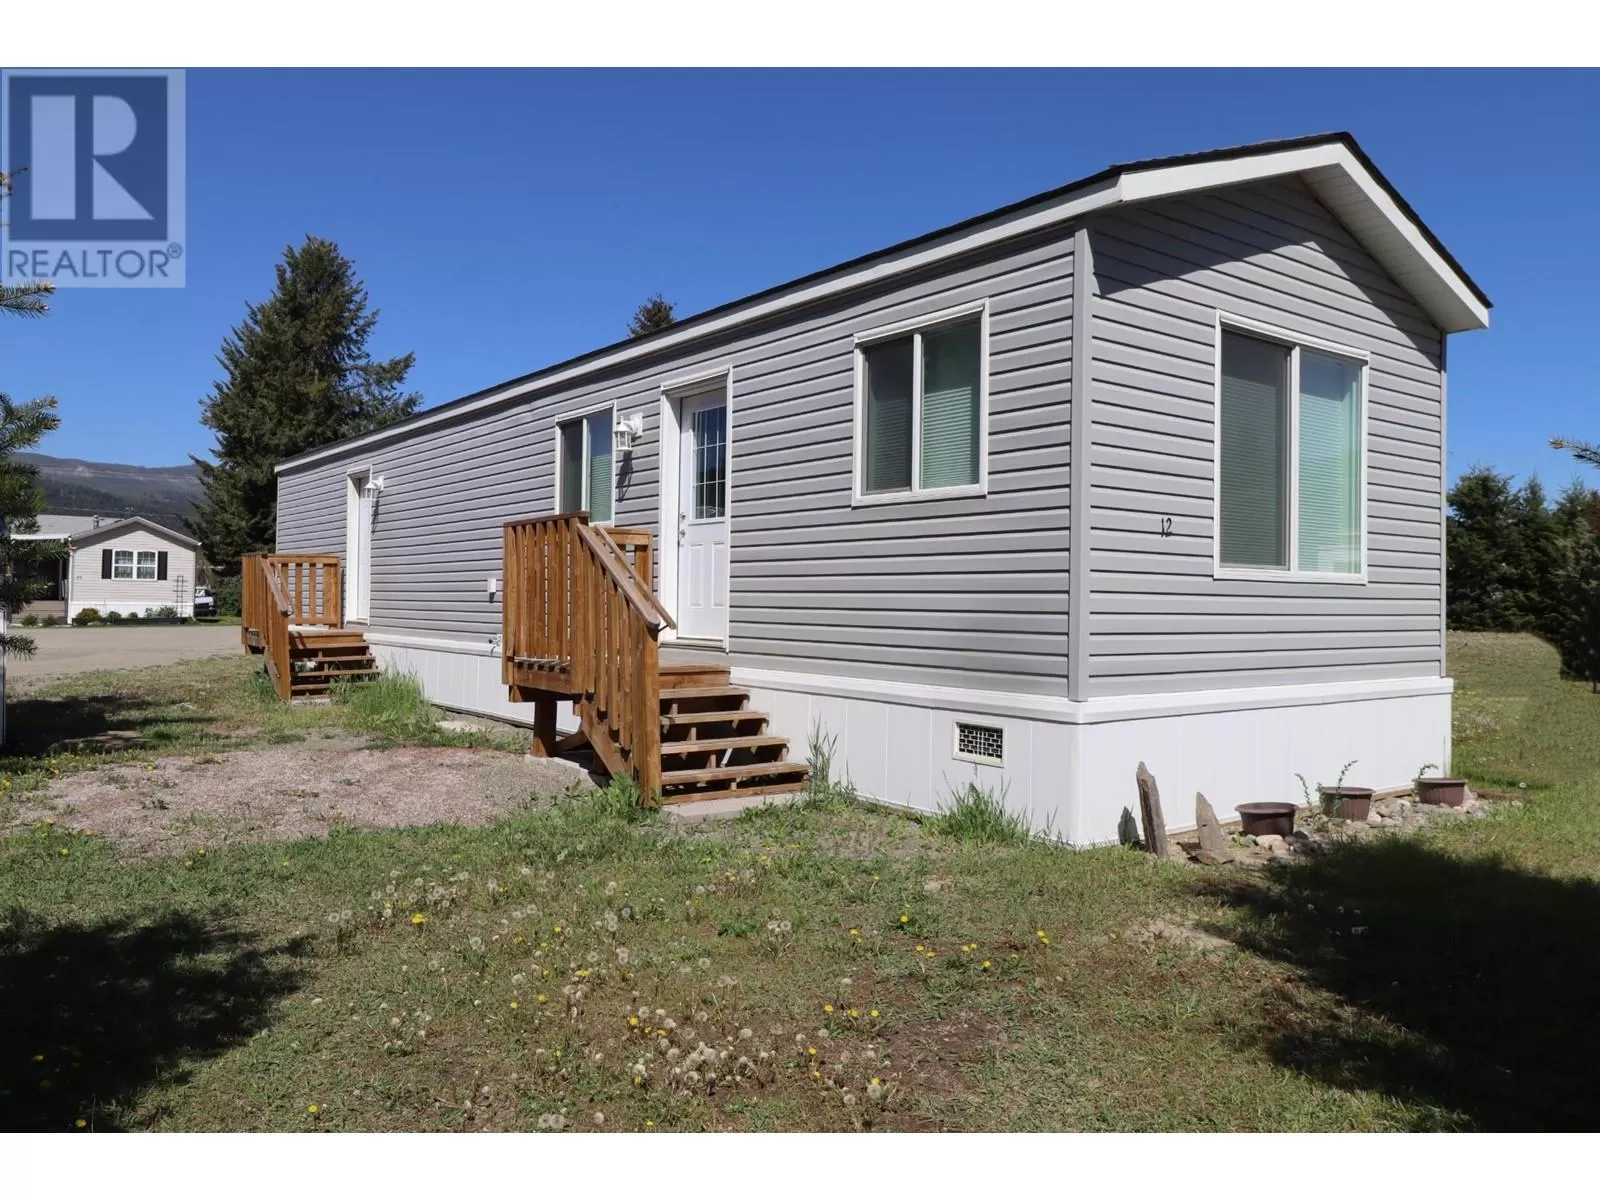 Mobile Home for rent: 12-620 Dixon Creek Road, Barriere, British Columbia V0E 1E0